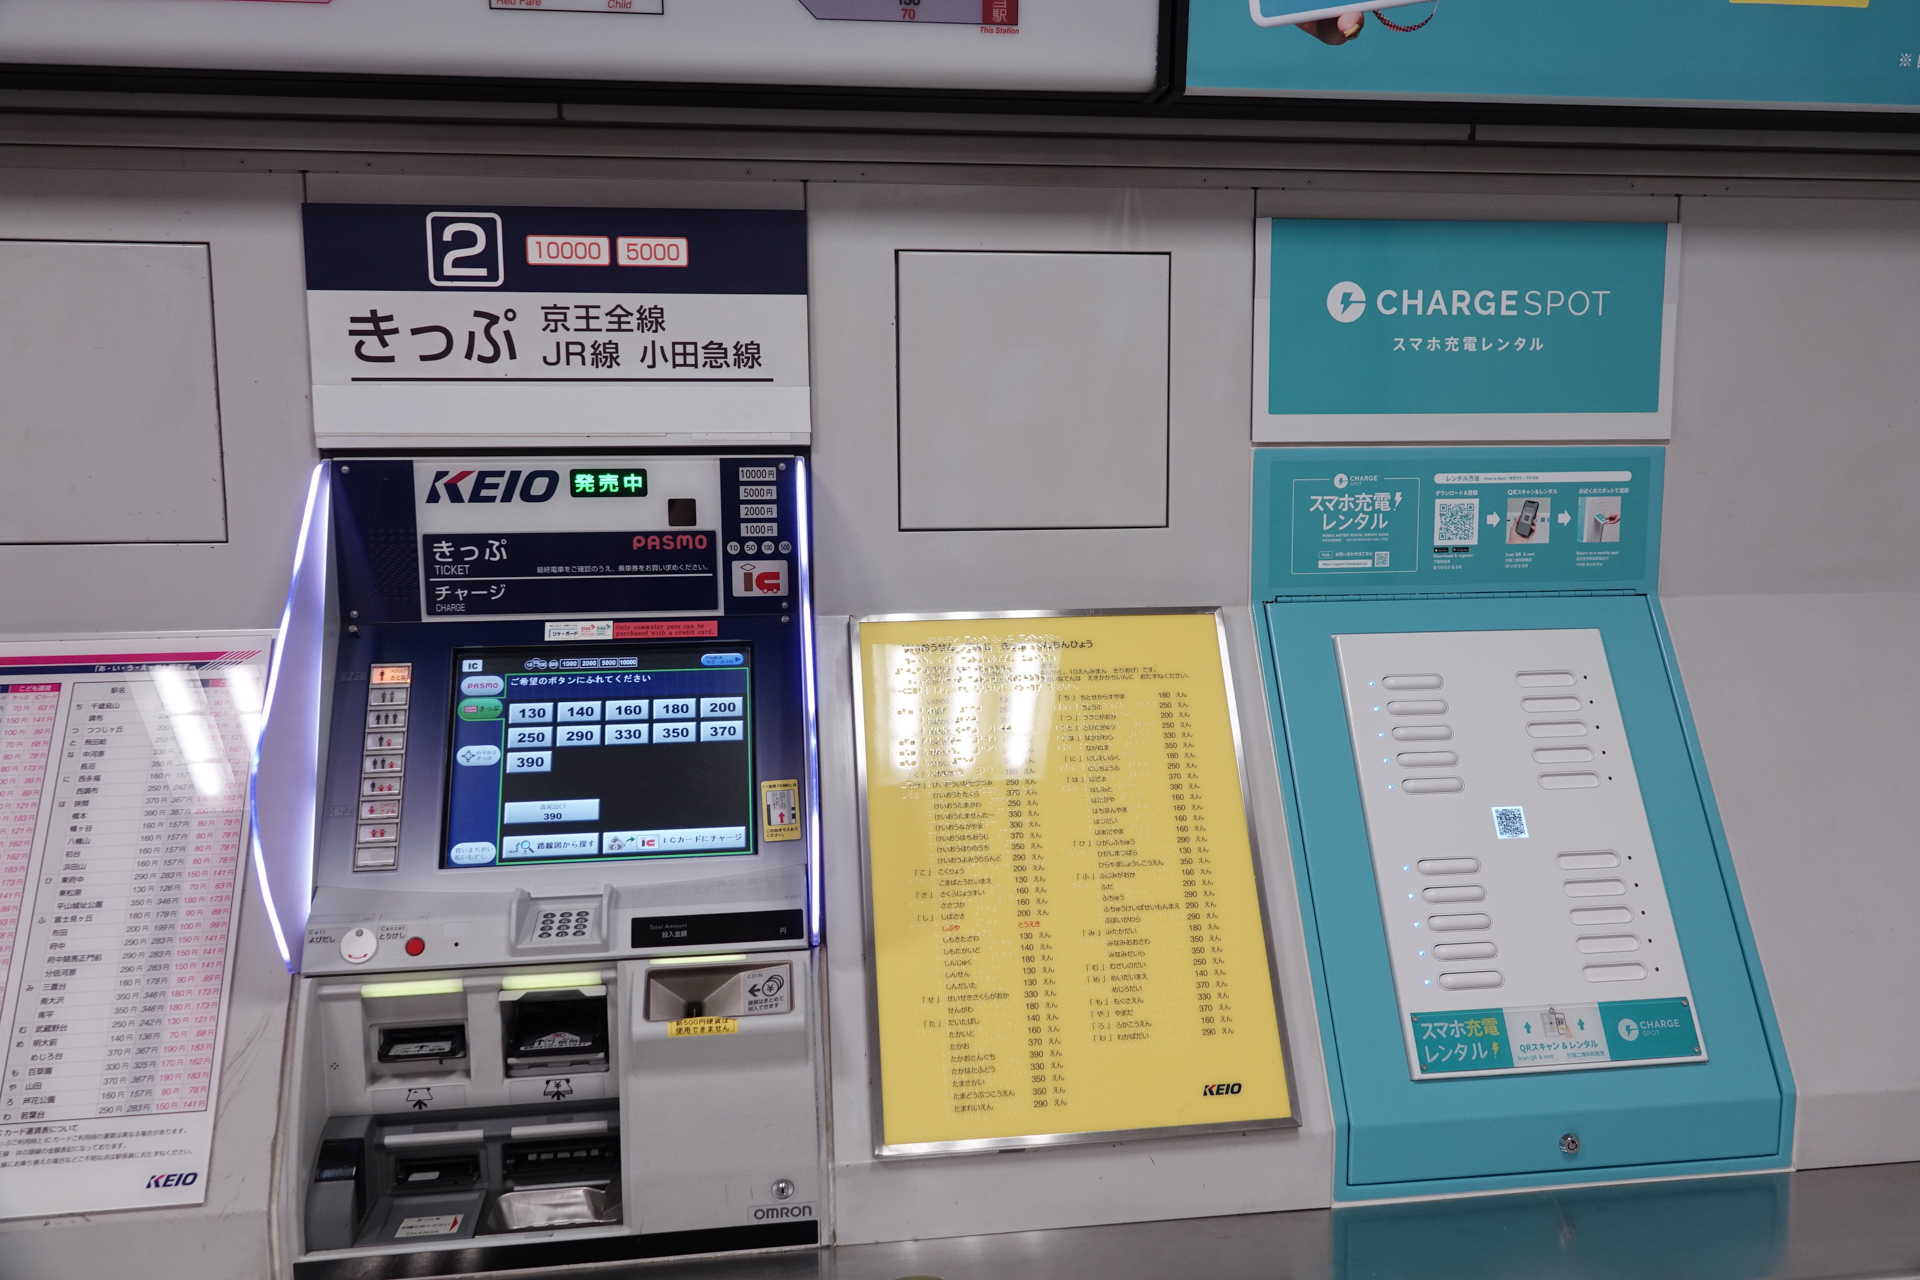 券売機横でモバイルバッテリーを借りられる「ChargeSPOT」、京王電鉄で 